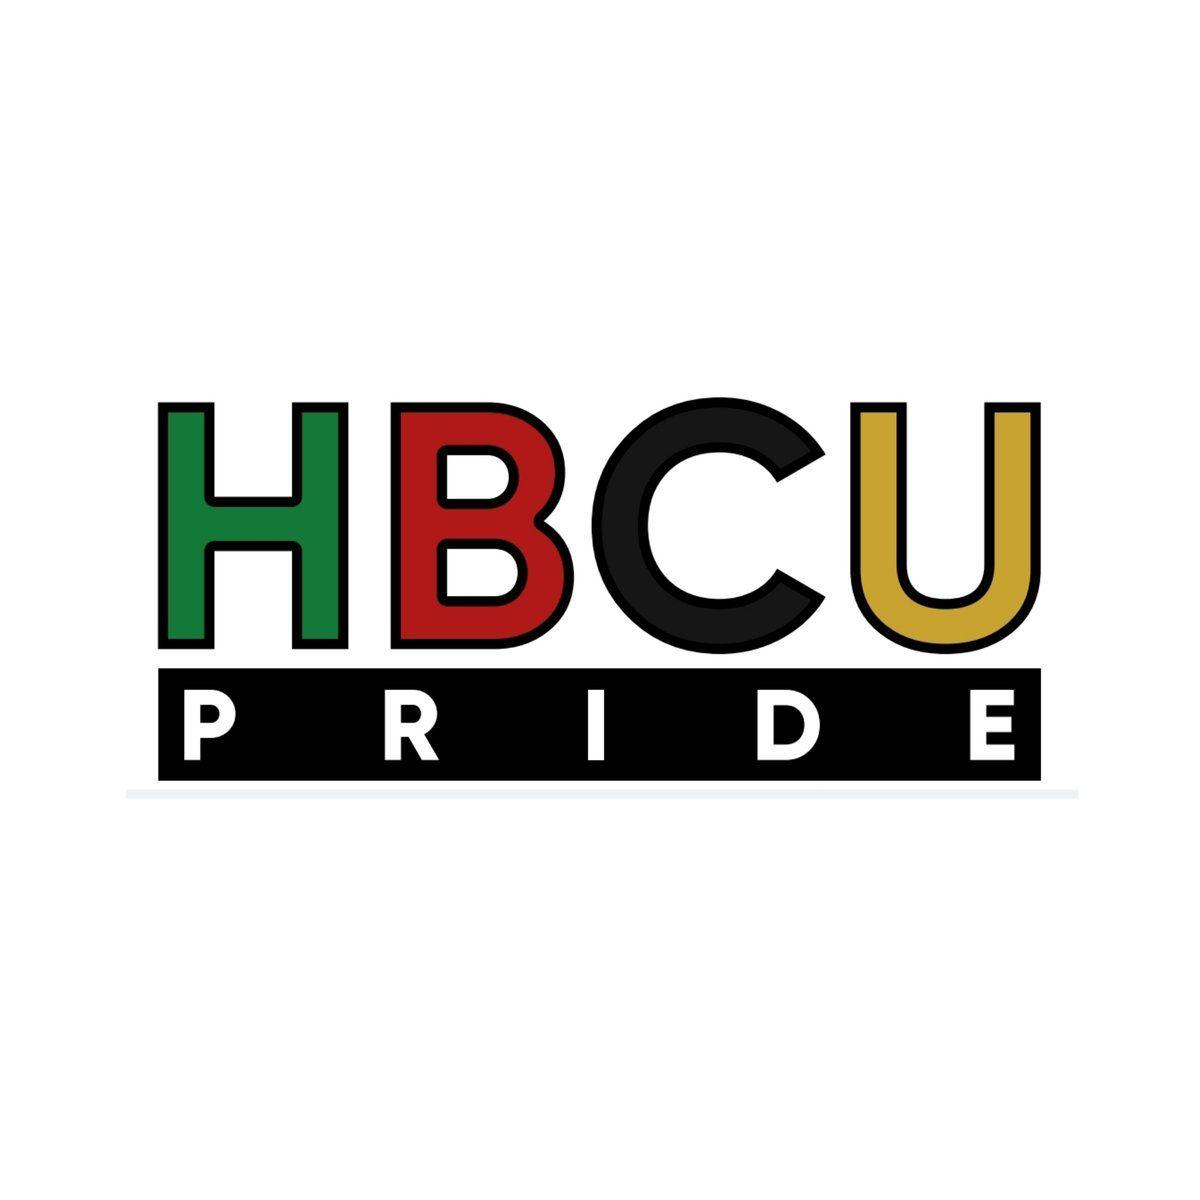 HBCU Logo - HBCU Pride Nation